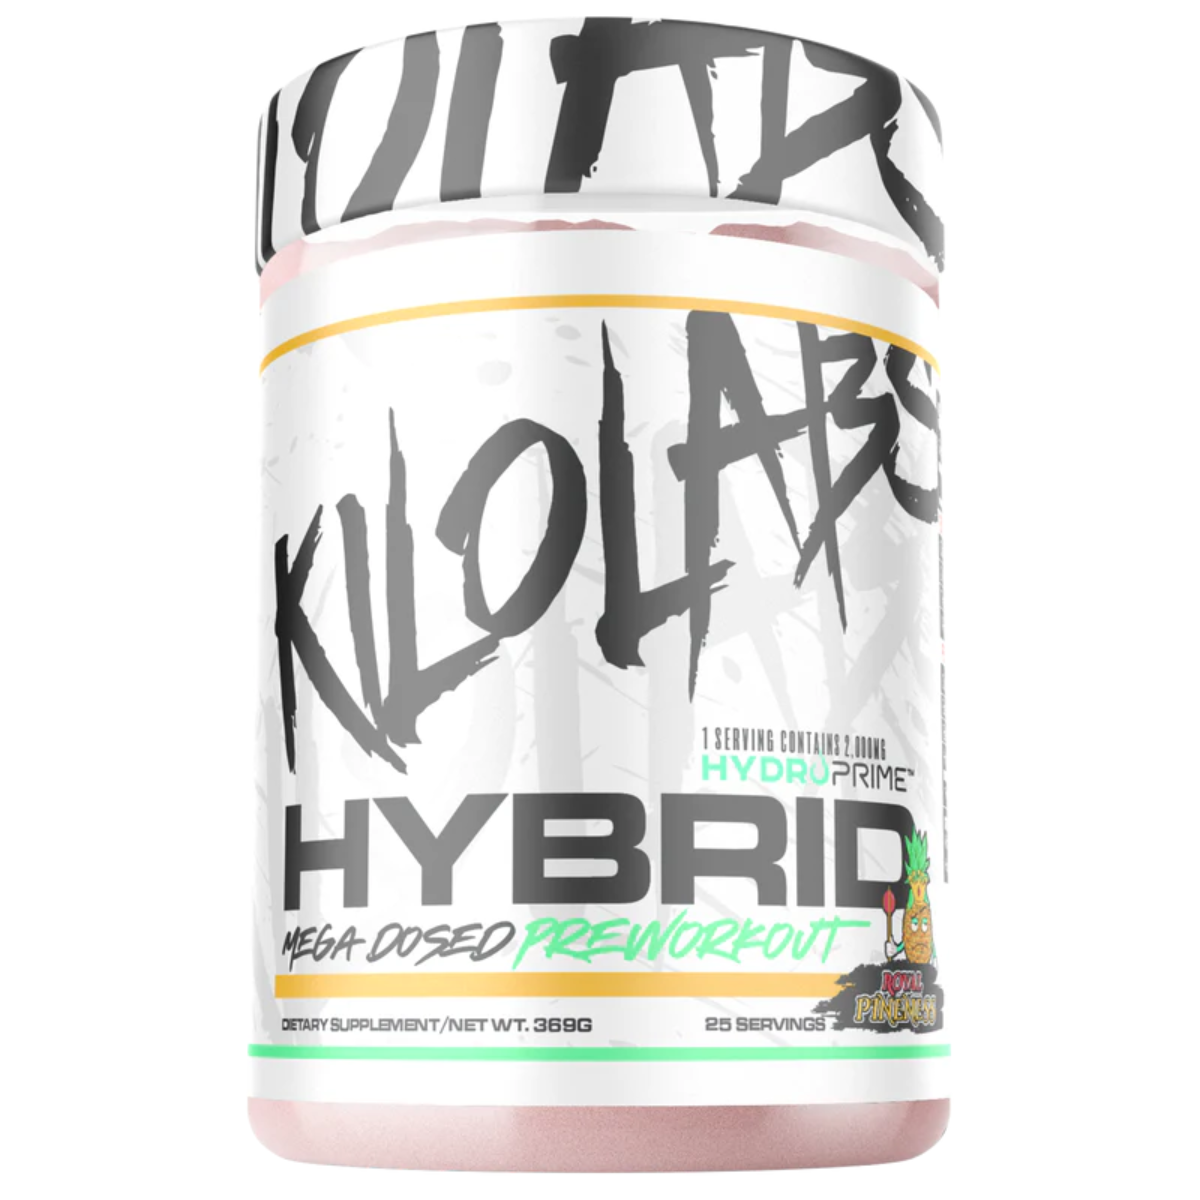 Kilo Labs Hybrid